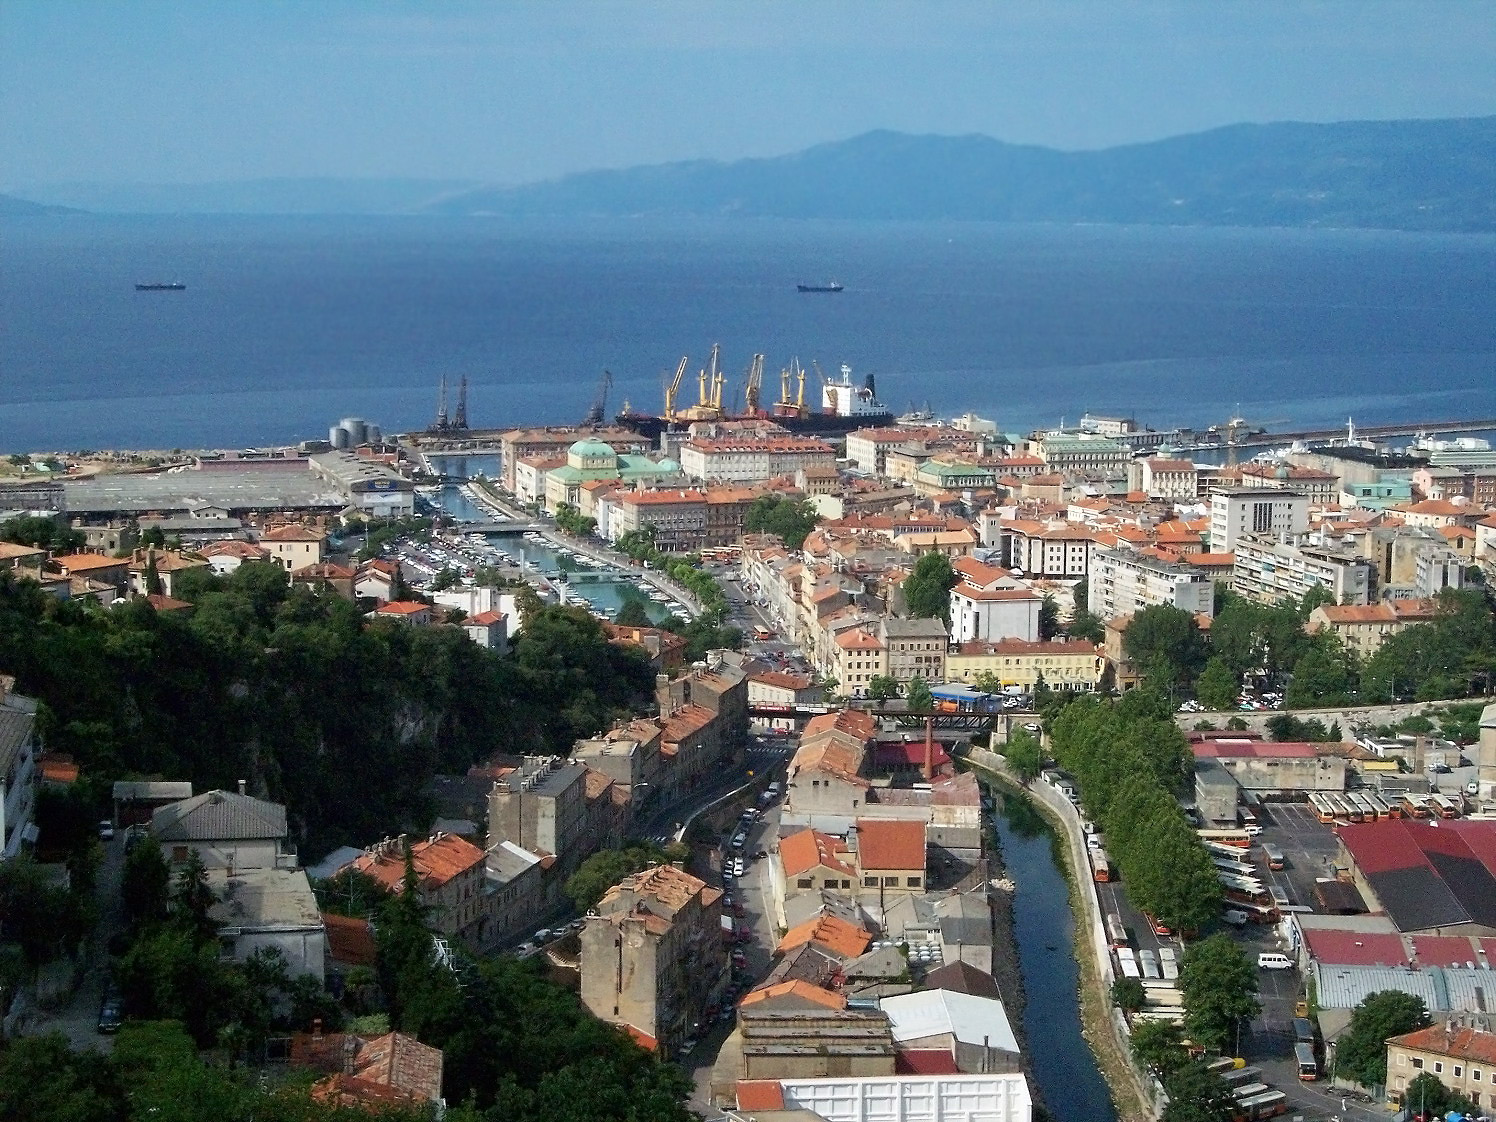 Cityscape and sea landscape in Croatia.